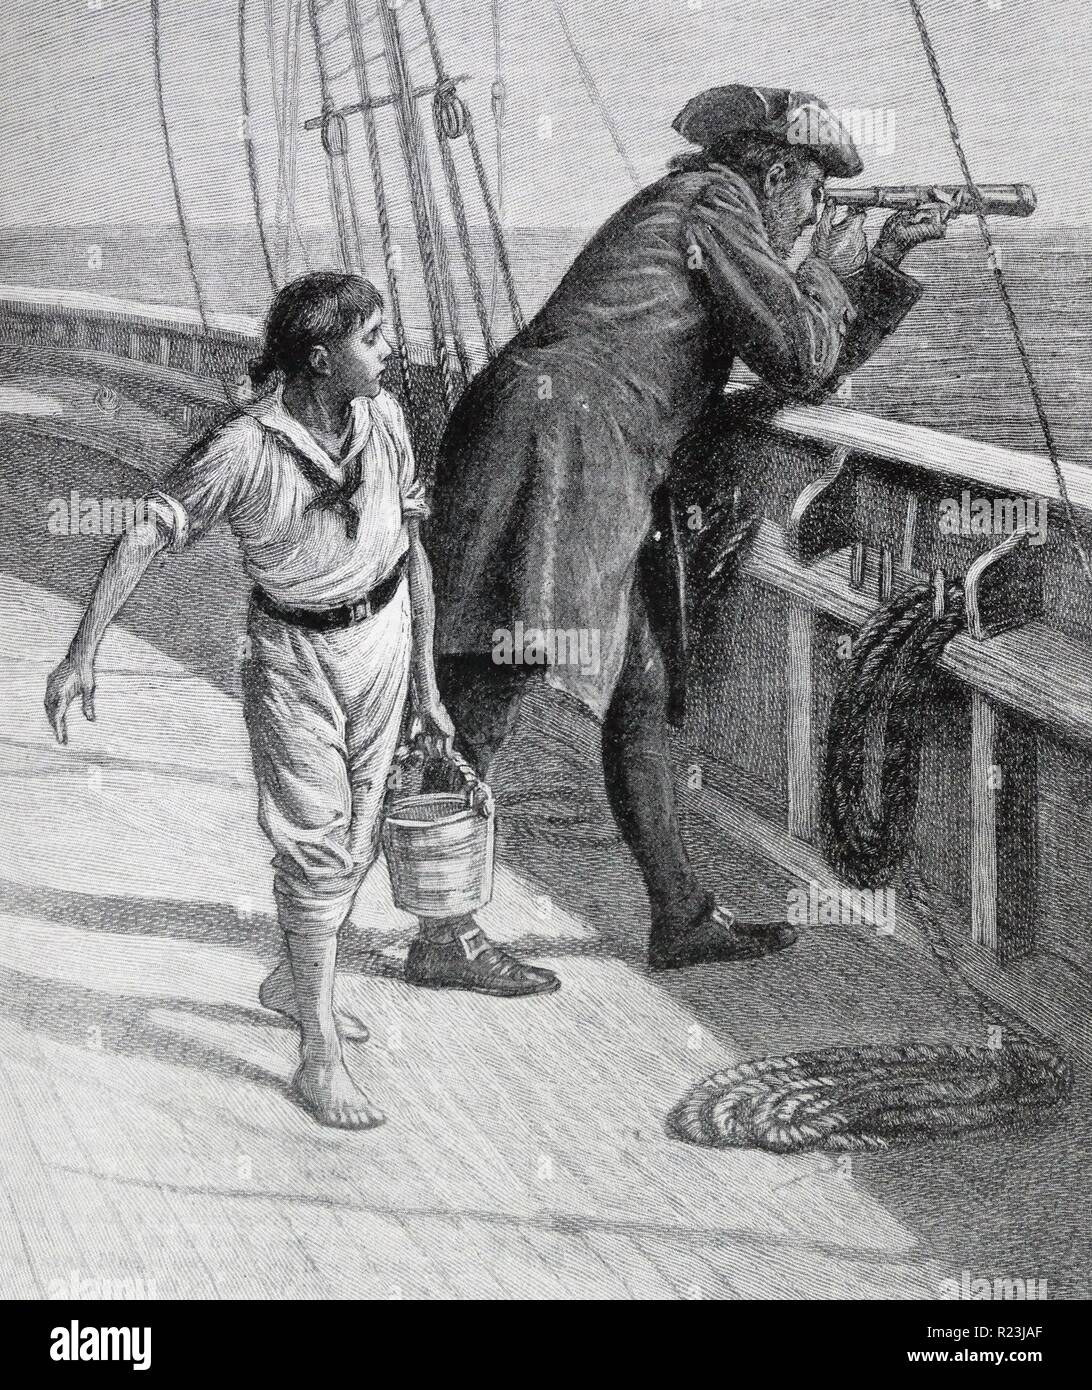 Illustrazione di un libro che raffigura il capitano e un giovane ragazzo. Il capitano è guardando fuori attraverso il mare attraverso il suo telescopio, mentre il giovane ragazzo è portante una benna di granite. Datata 1913 Foto Stock